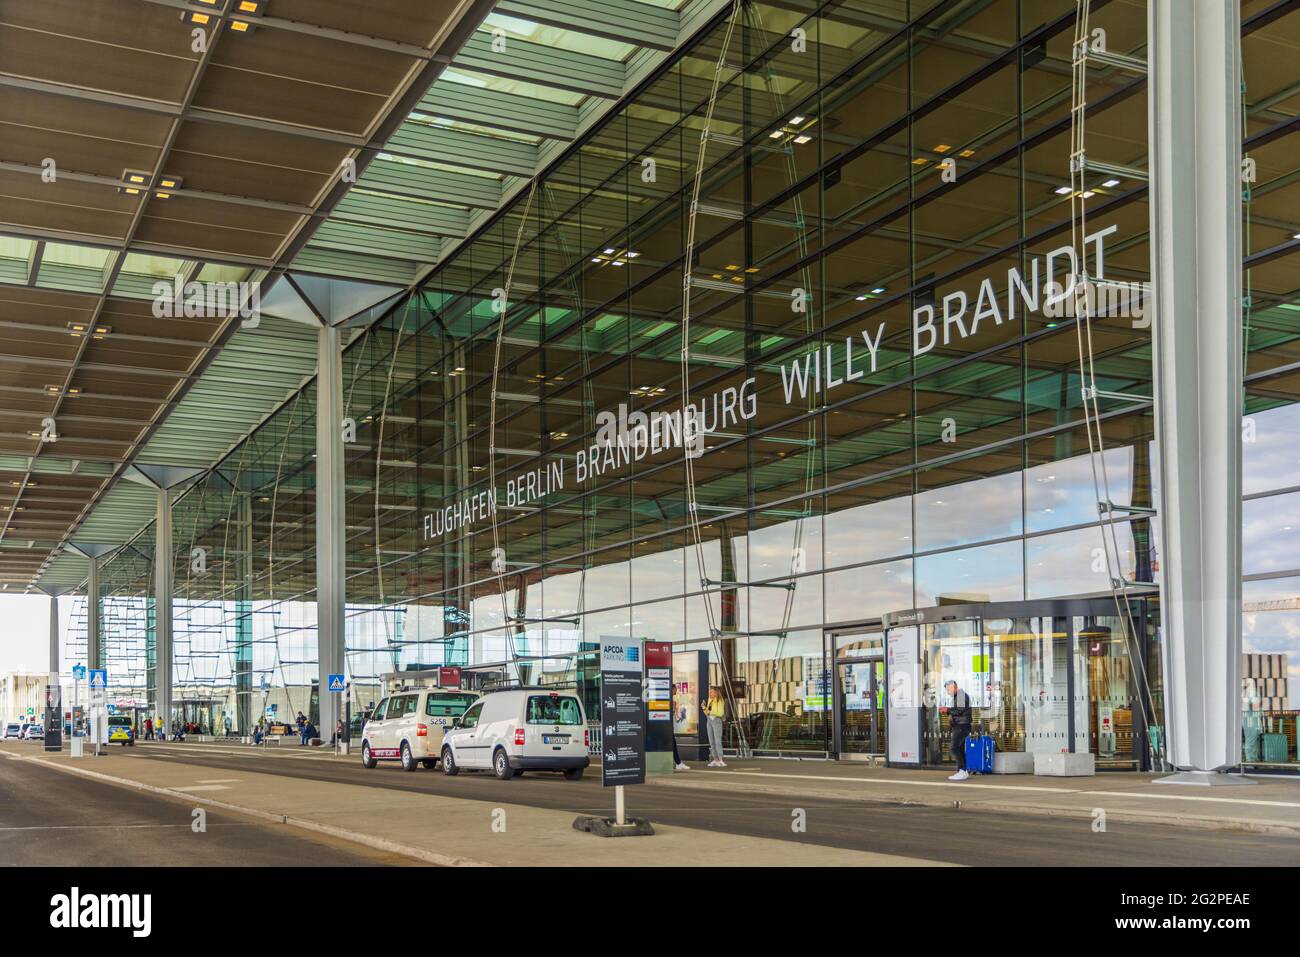 BERLINO, GERMANIA - 18 MAGGIO 2021: Esterno del Terminal 1 dell'aeroporto internazionale di Berlino-Brandeburgo BER, di recente apertura Foto Stock